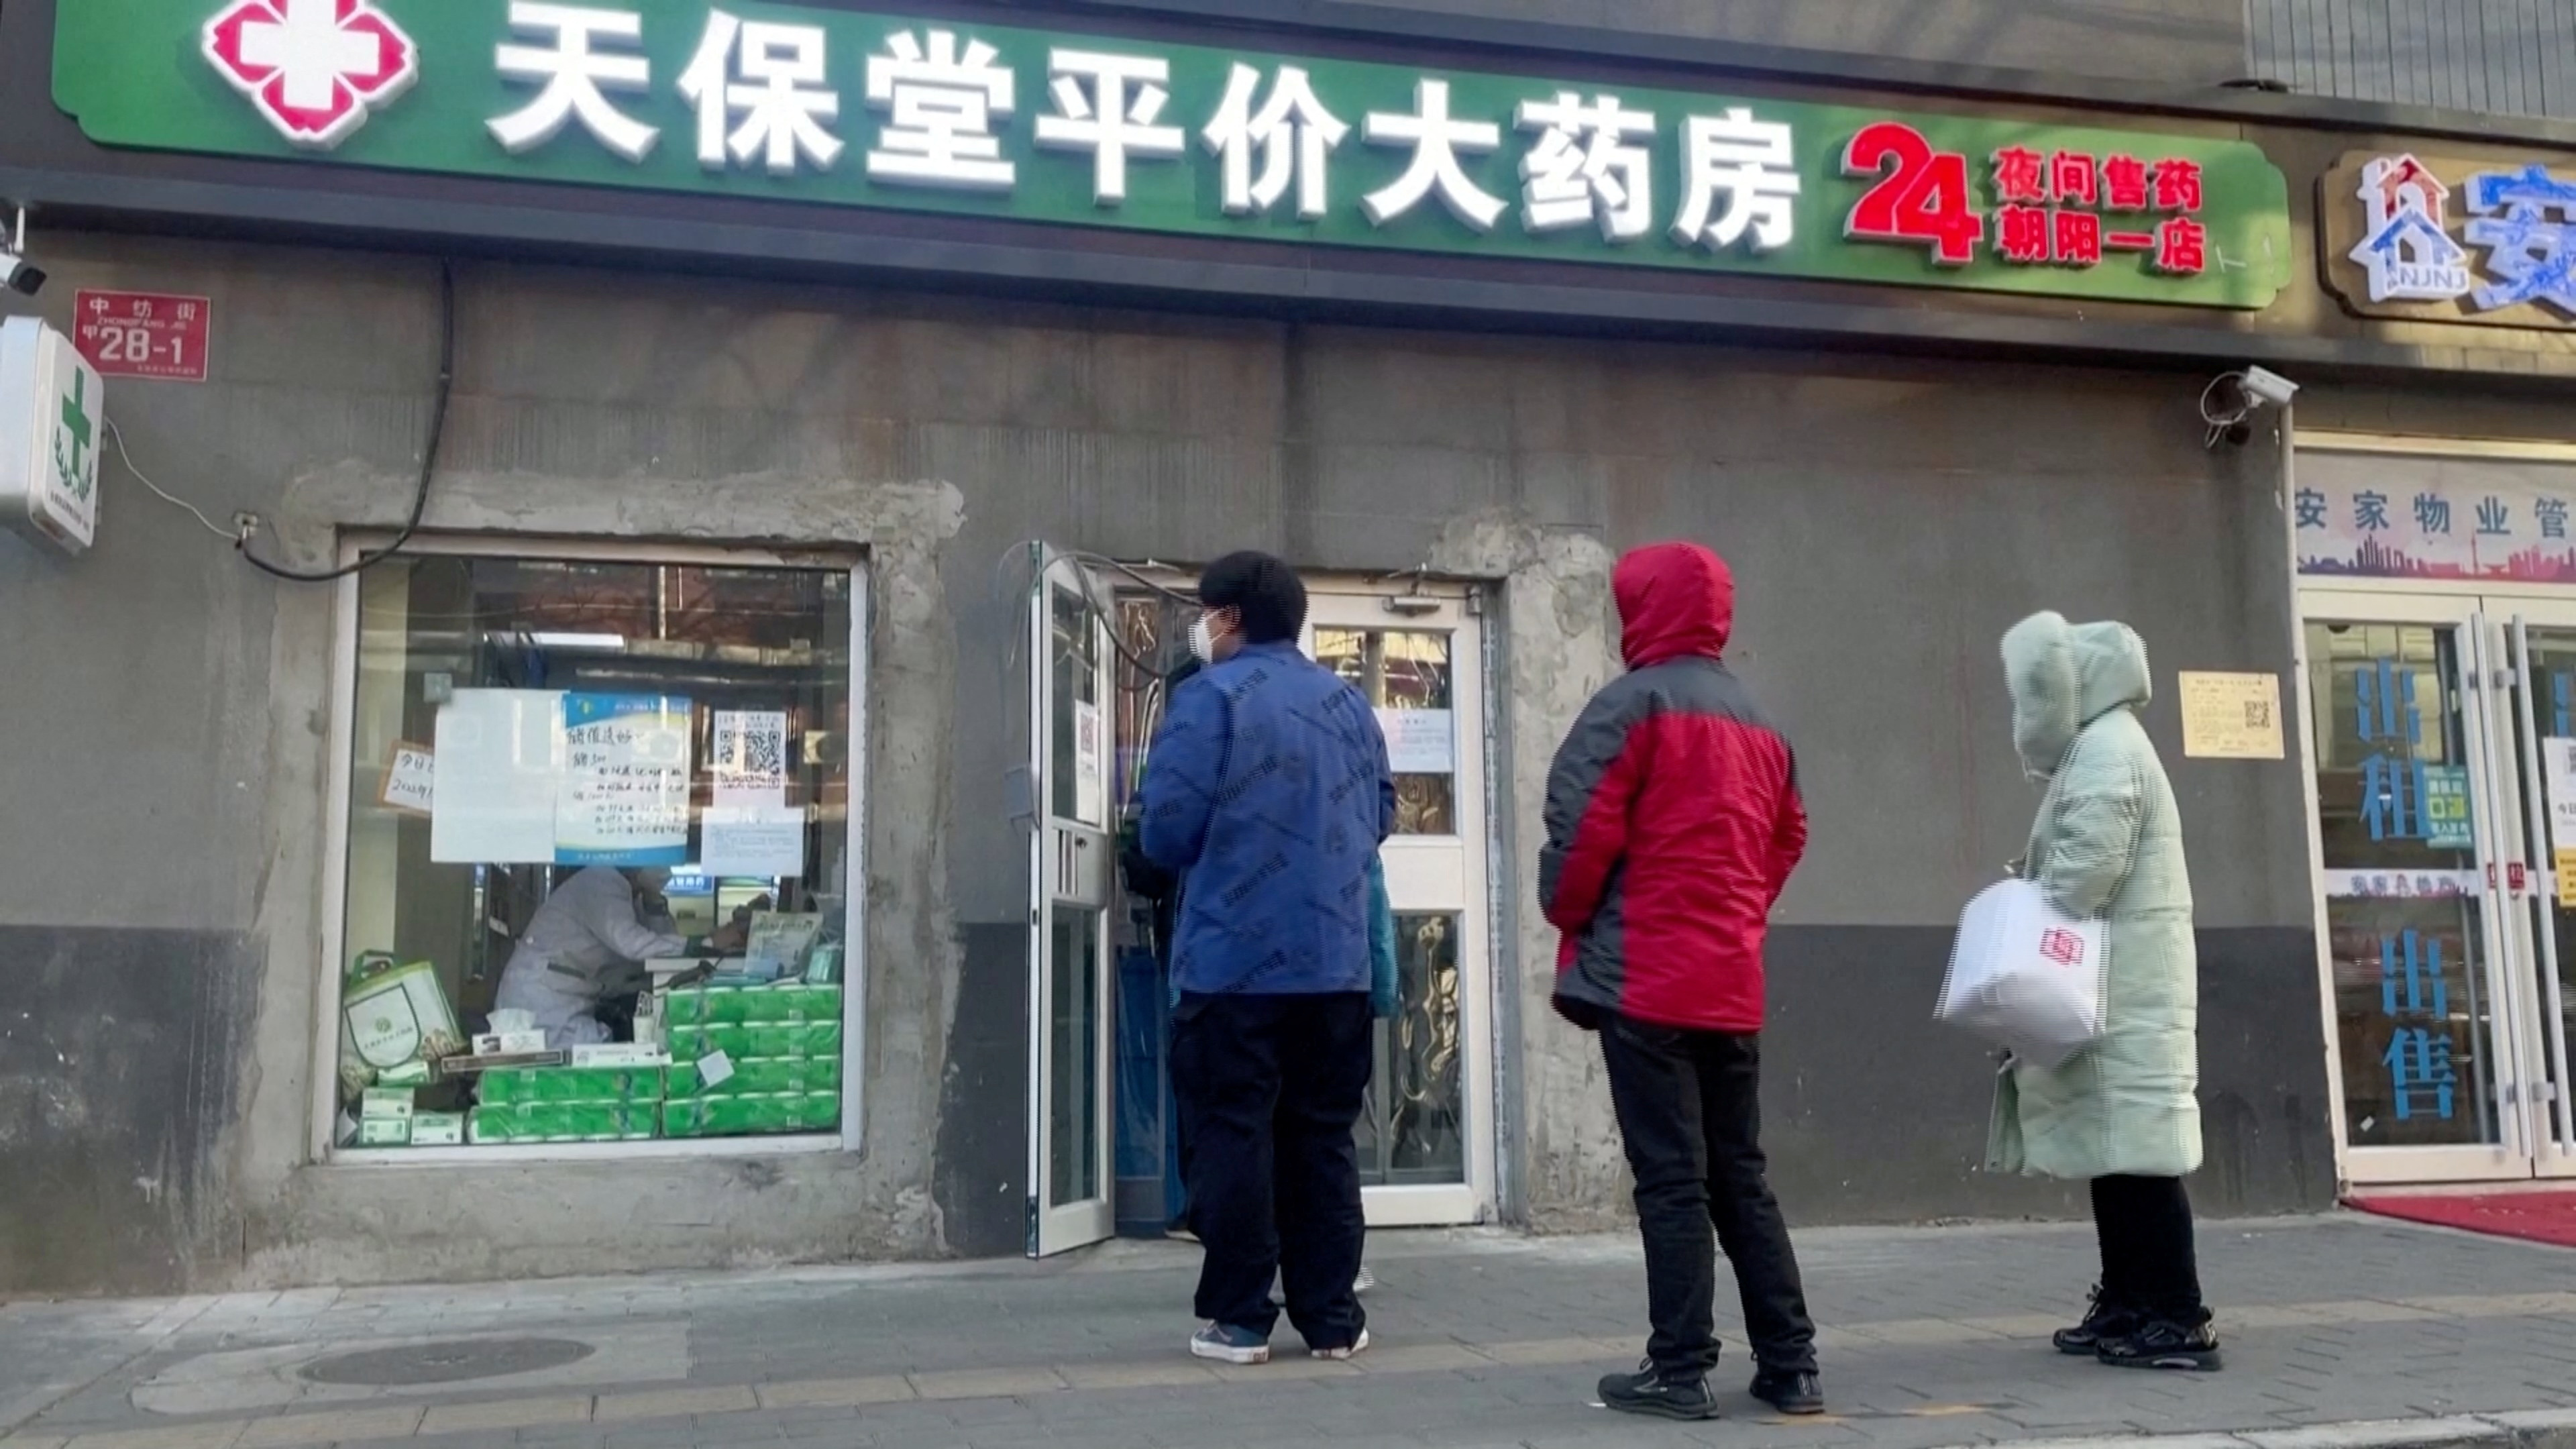 Las filas en las farmacias son postal corriente en la capital china (Reuters)